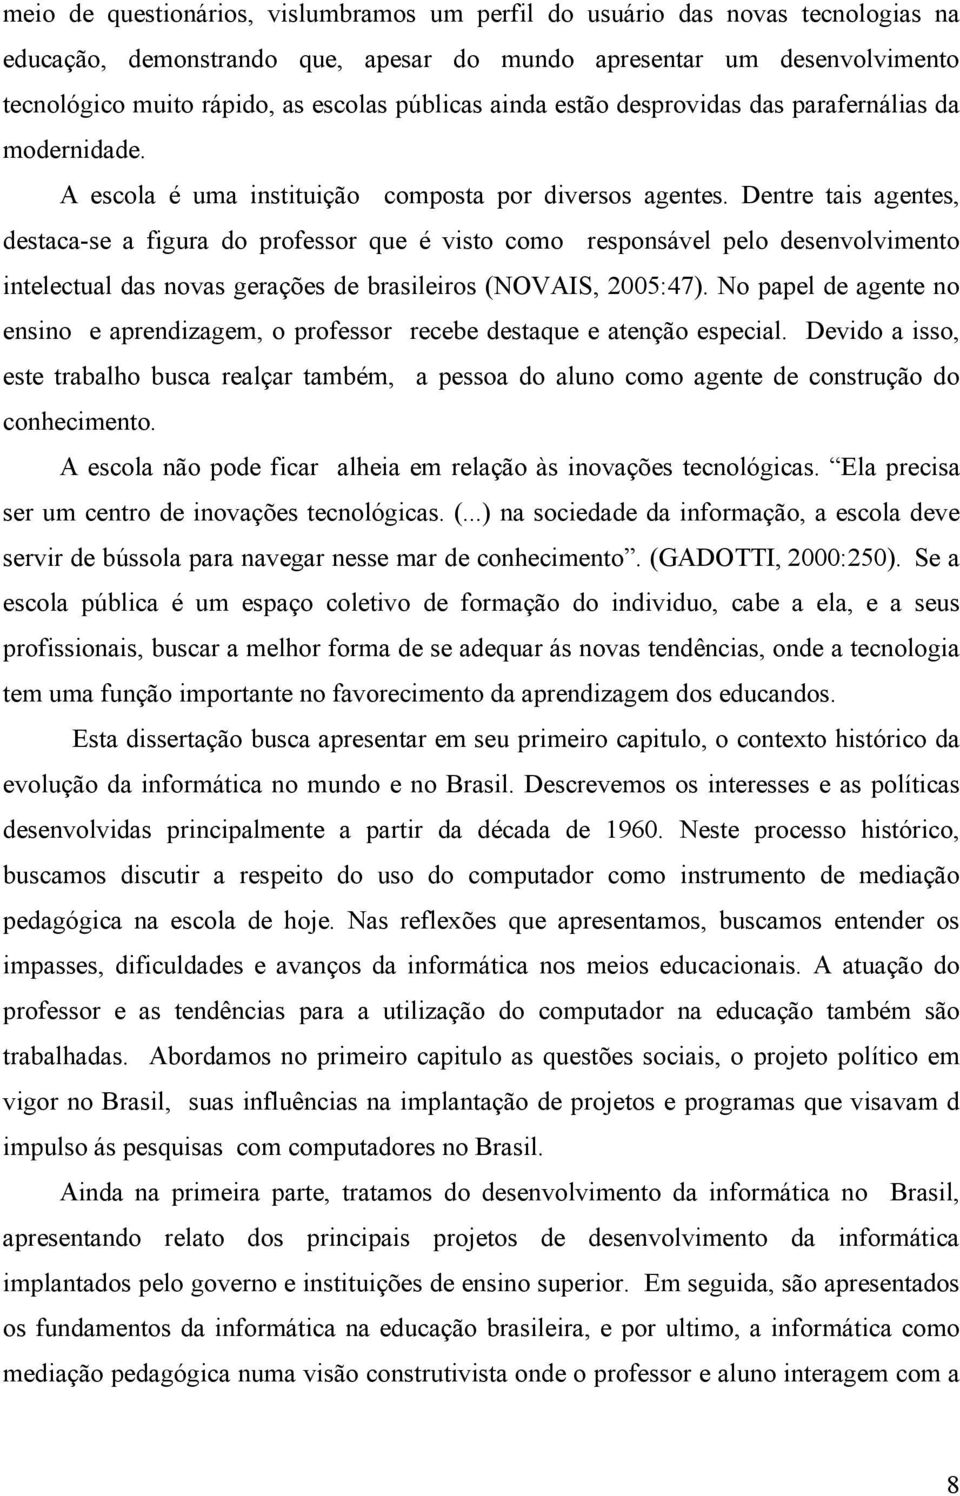 Dentre tais agentes, destaca-se a figura do professor que é visto como responsável pelo desenvolvimento intelectual das novas gerações de brasileiros (NOVAIS, 2005:47).